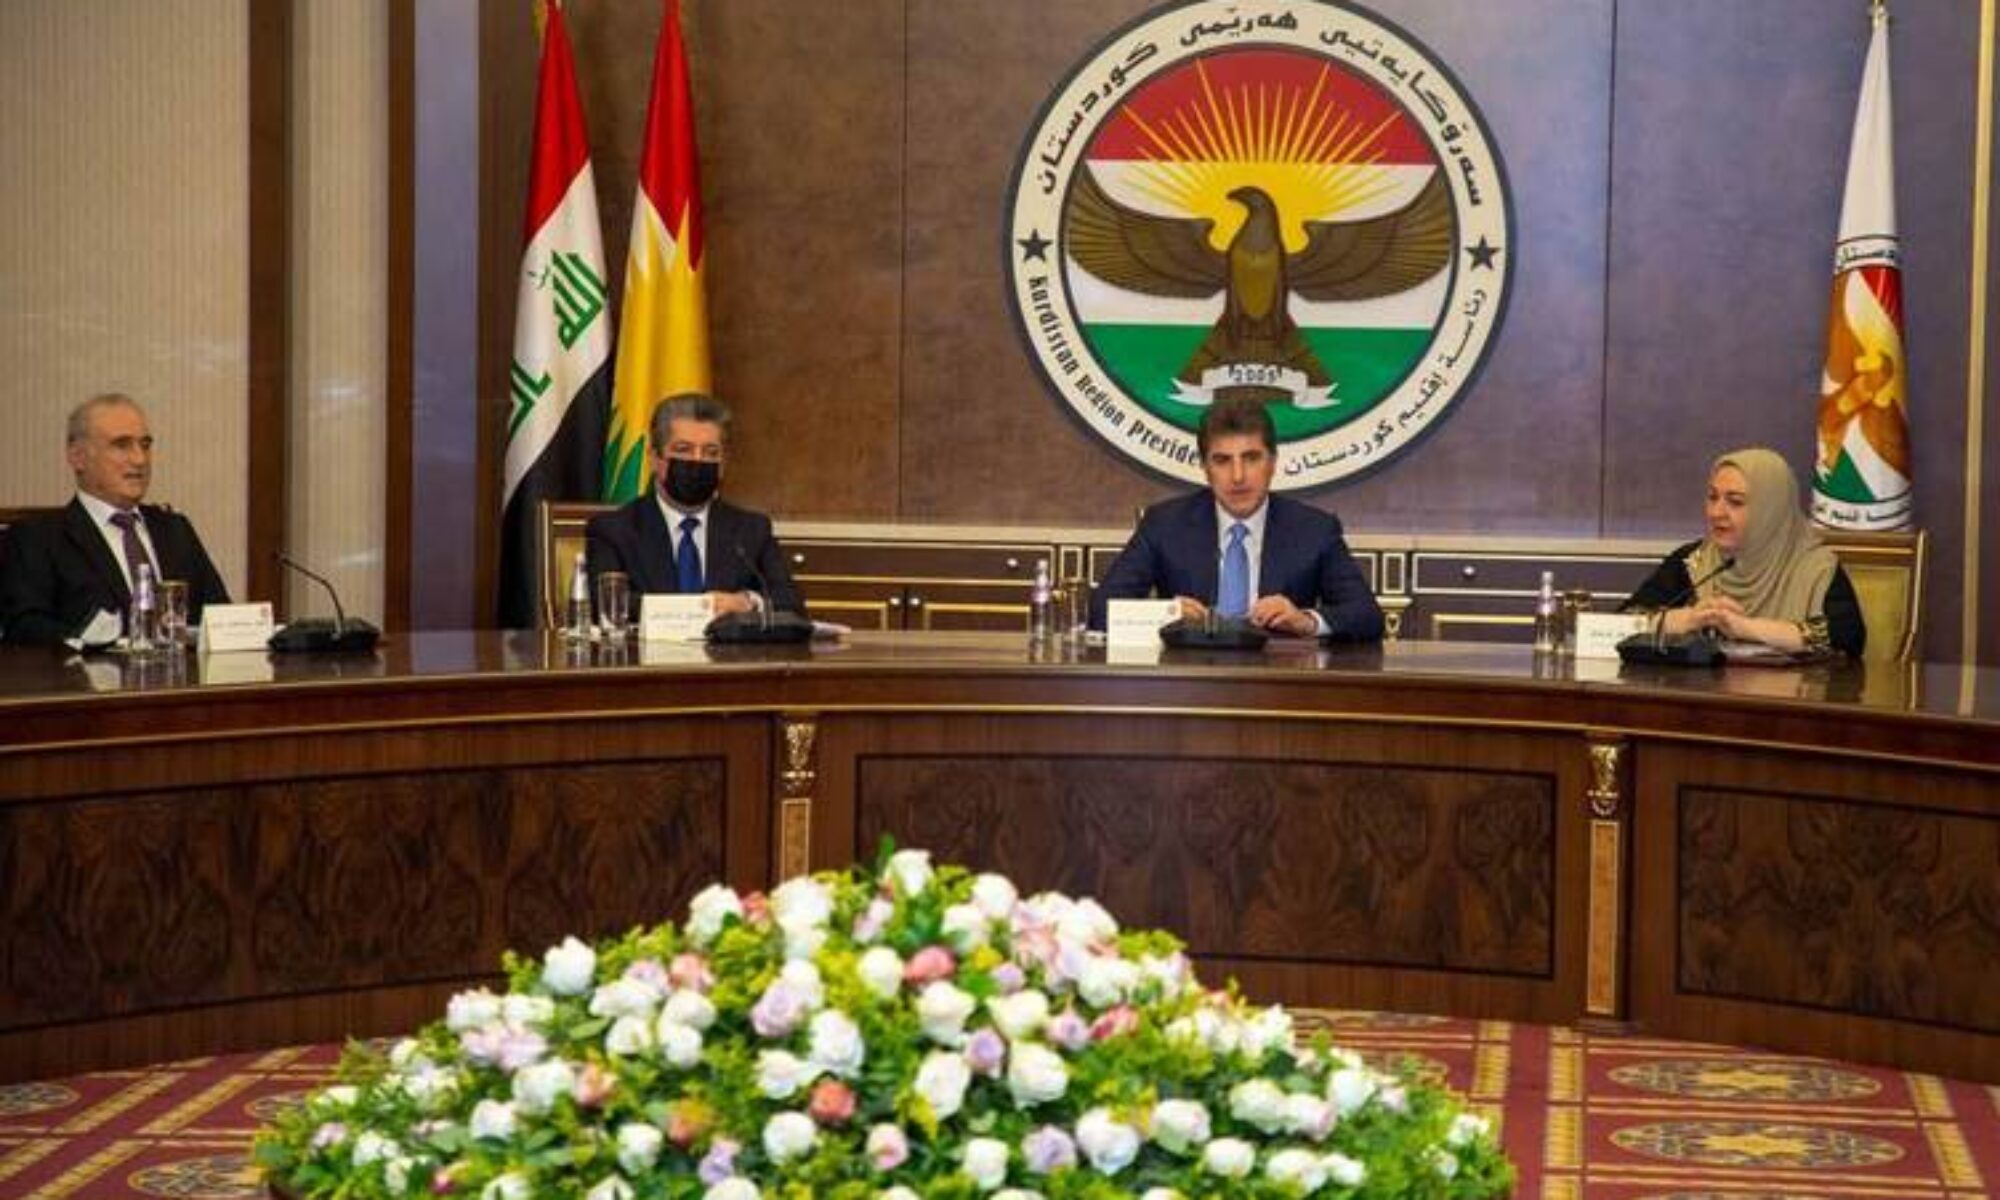 Kürdistan Bölgesinin anayasal kurumları: “Irak Federal Mahkemesi'nin kararı kabul edilemez"